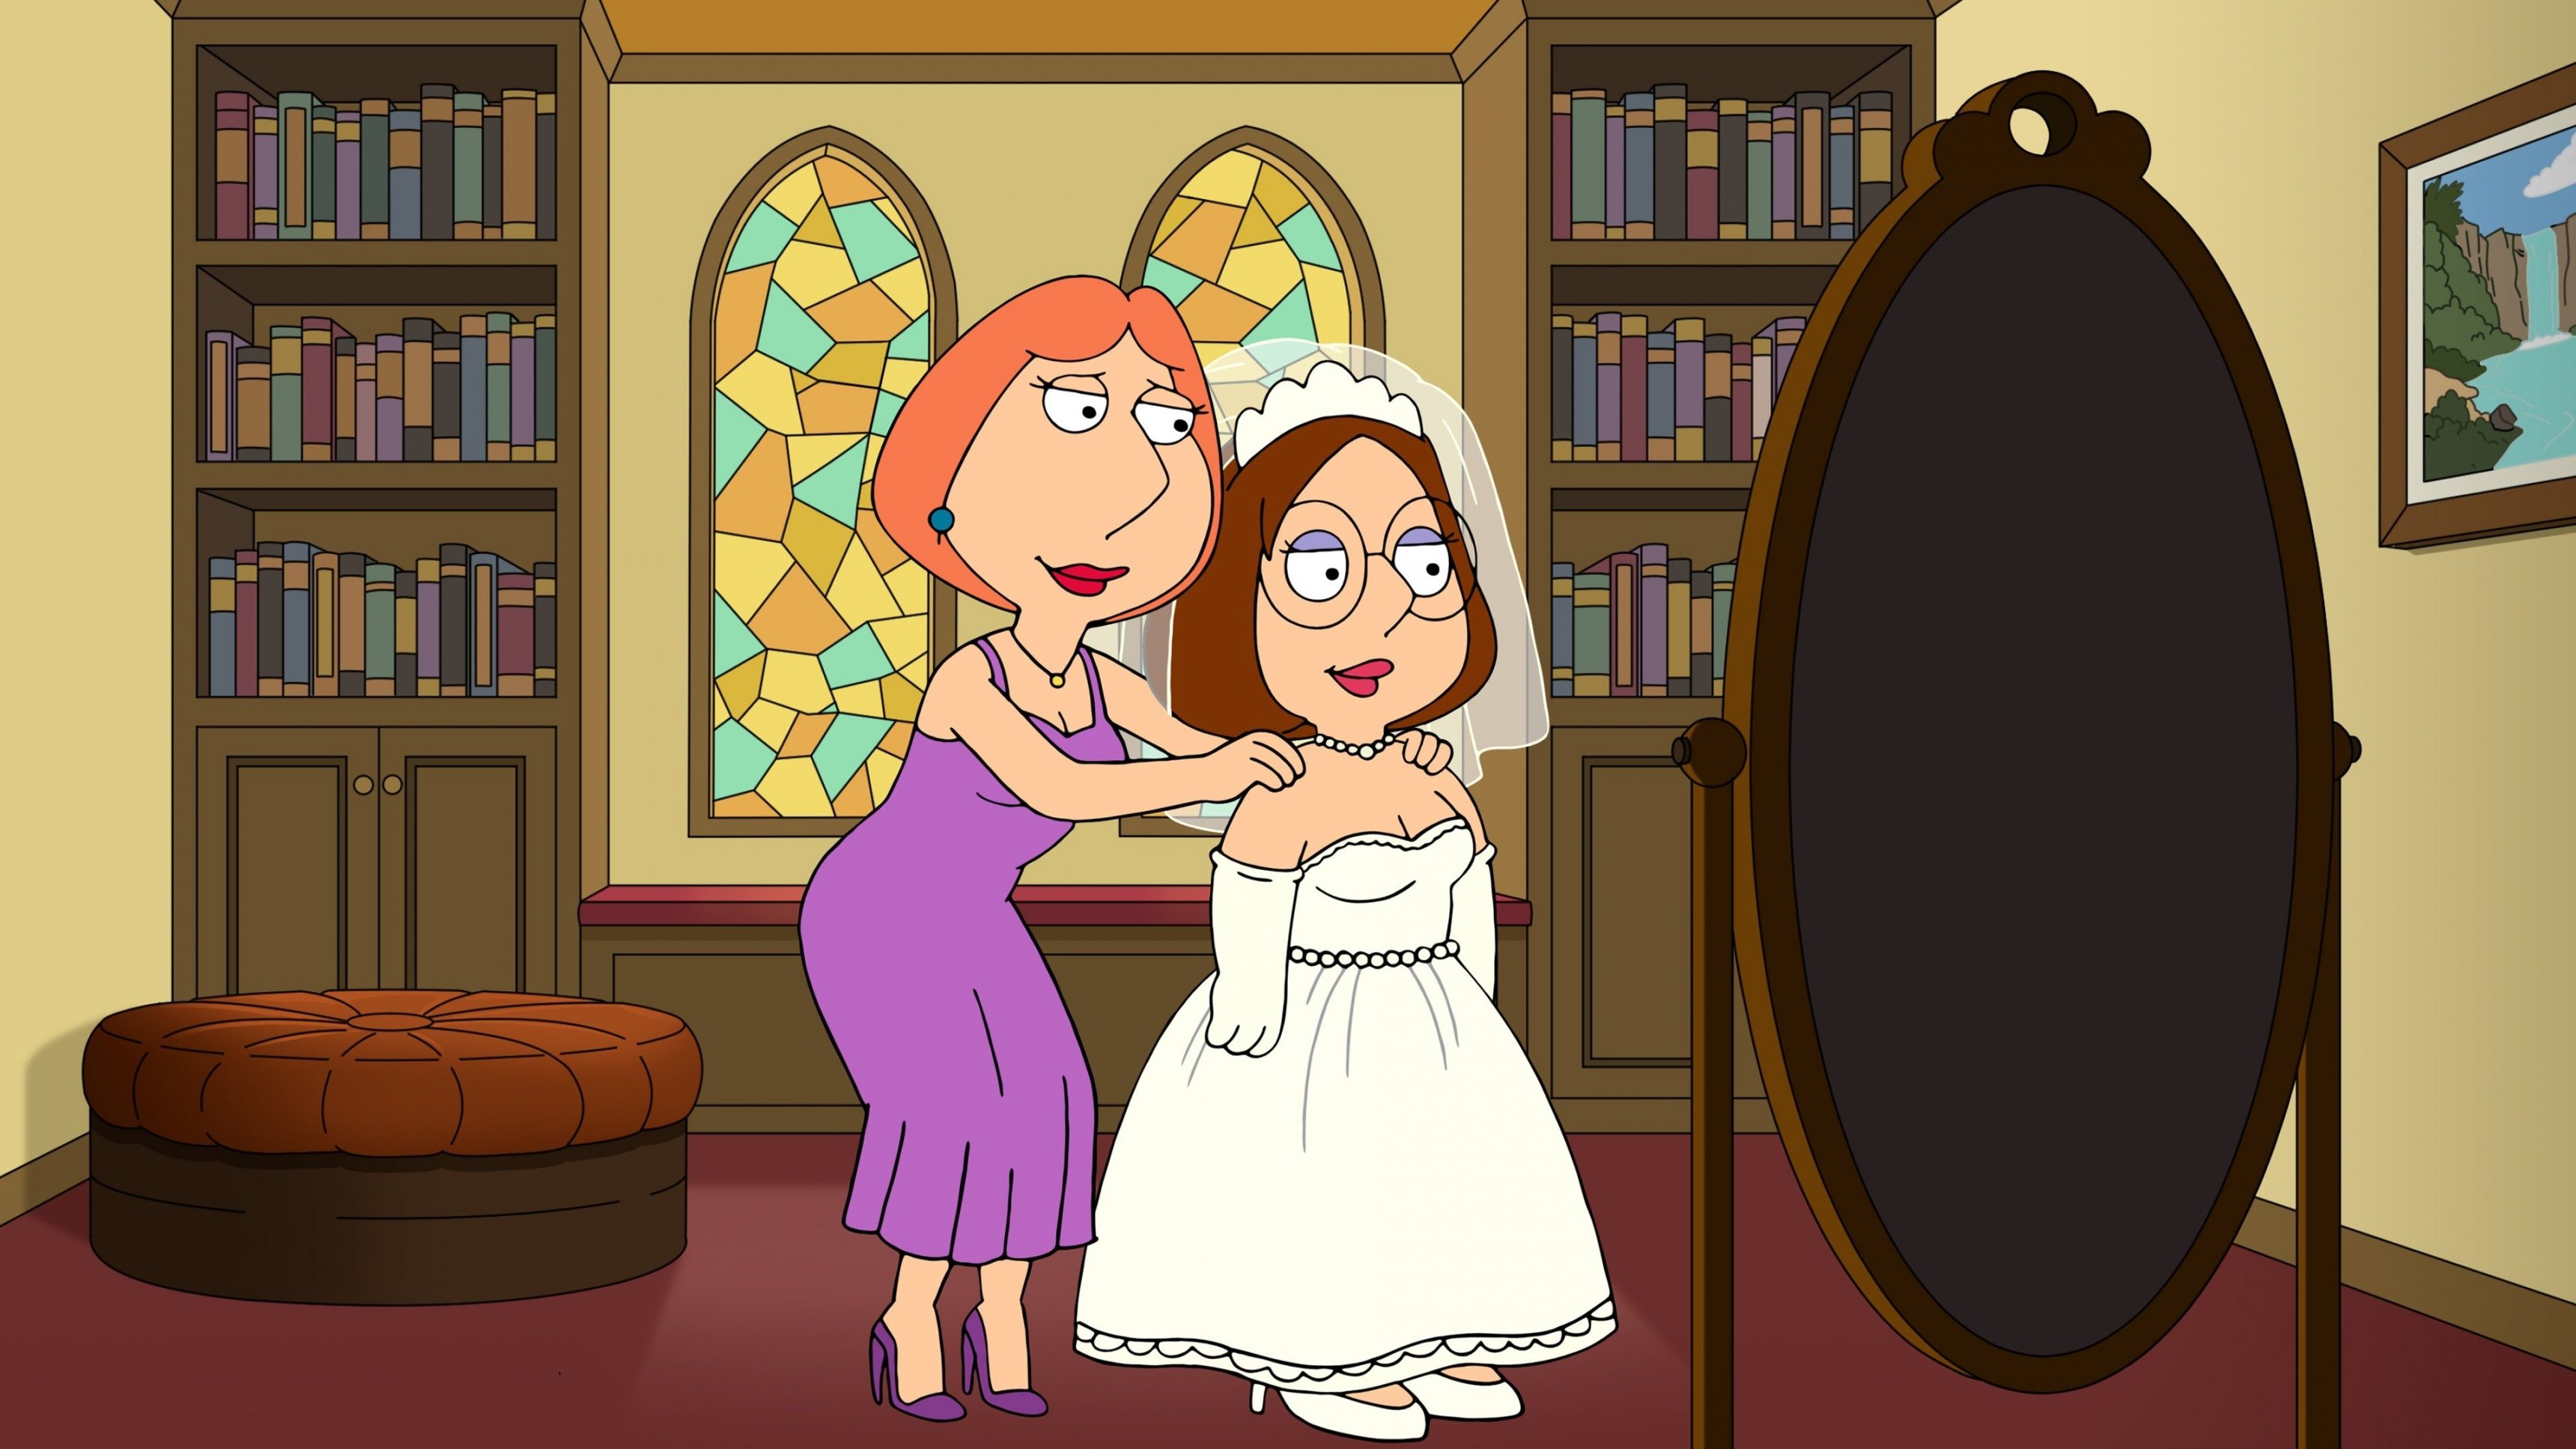 6. Meg's Wedding